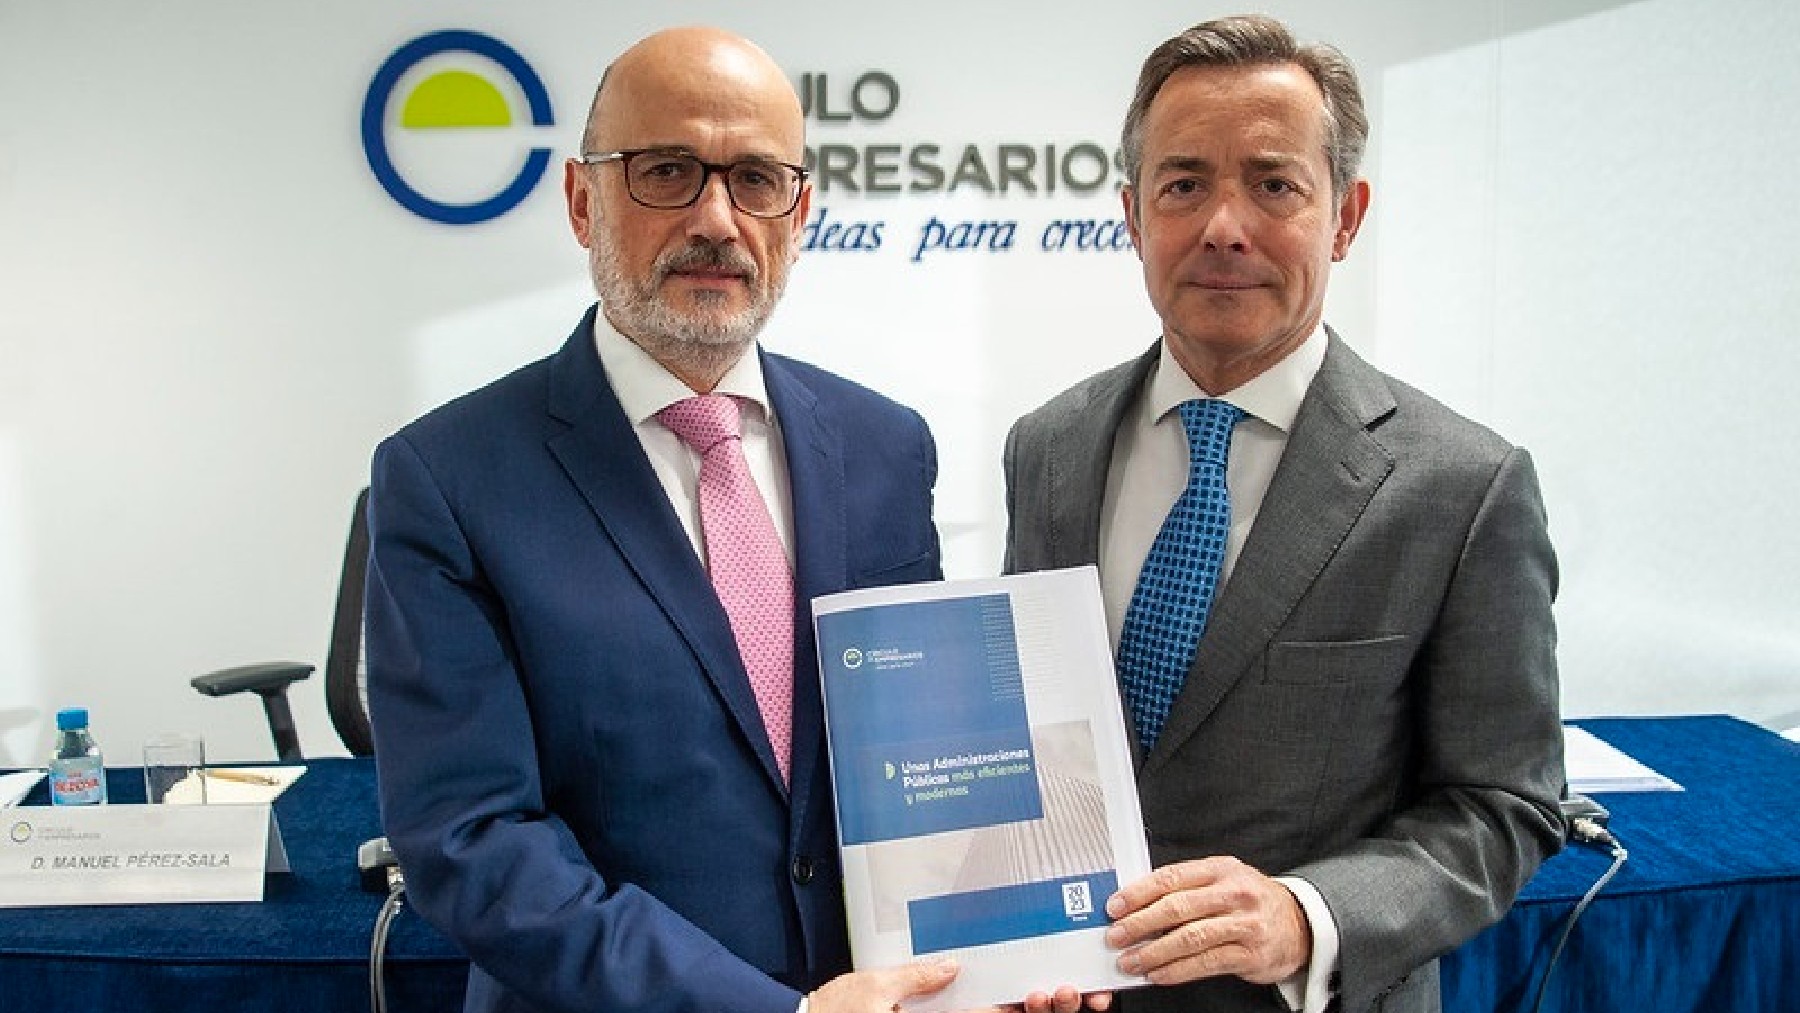 El presidente del Círculo, Manuel Pérez-Sala, y el presidente del Grupo de Trabajo de Administraciones Públicas, Ricardo Martínez Rico